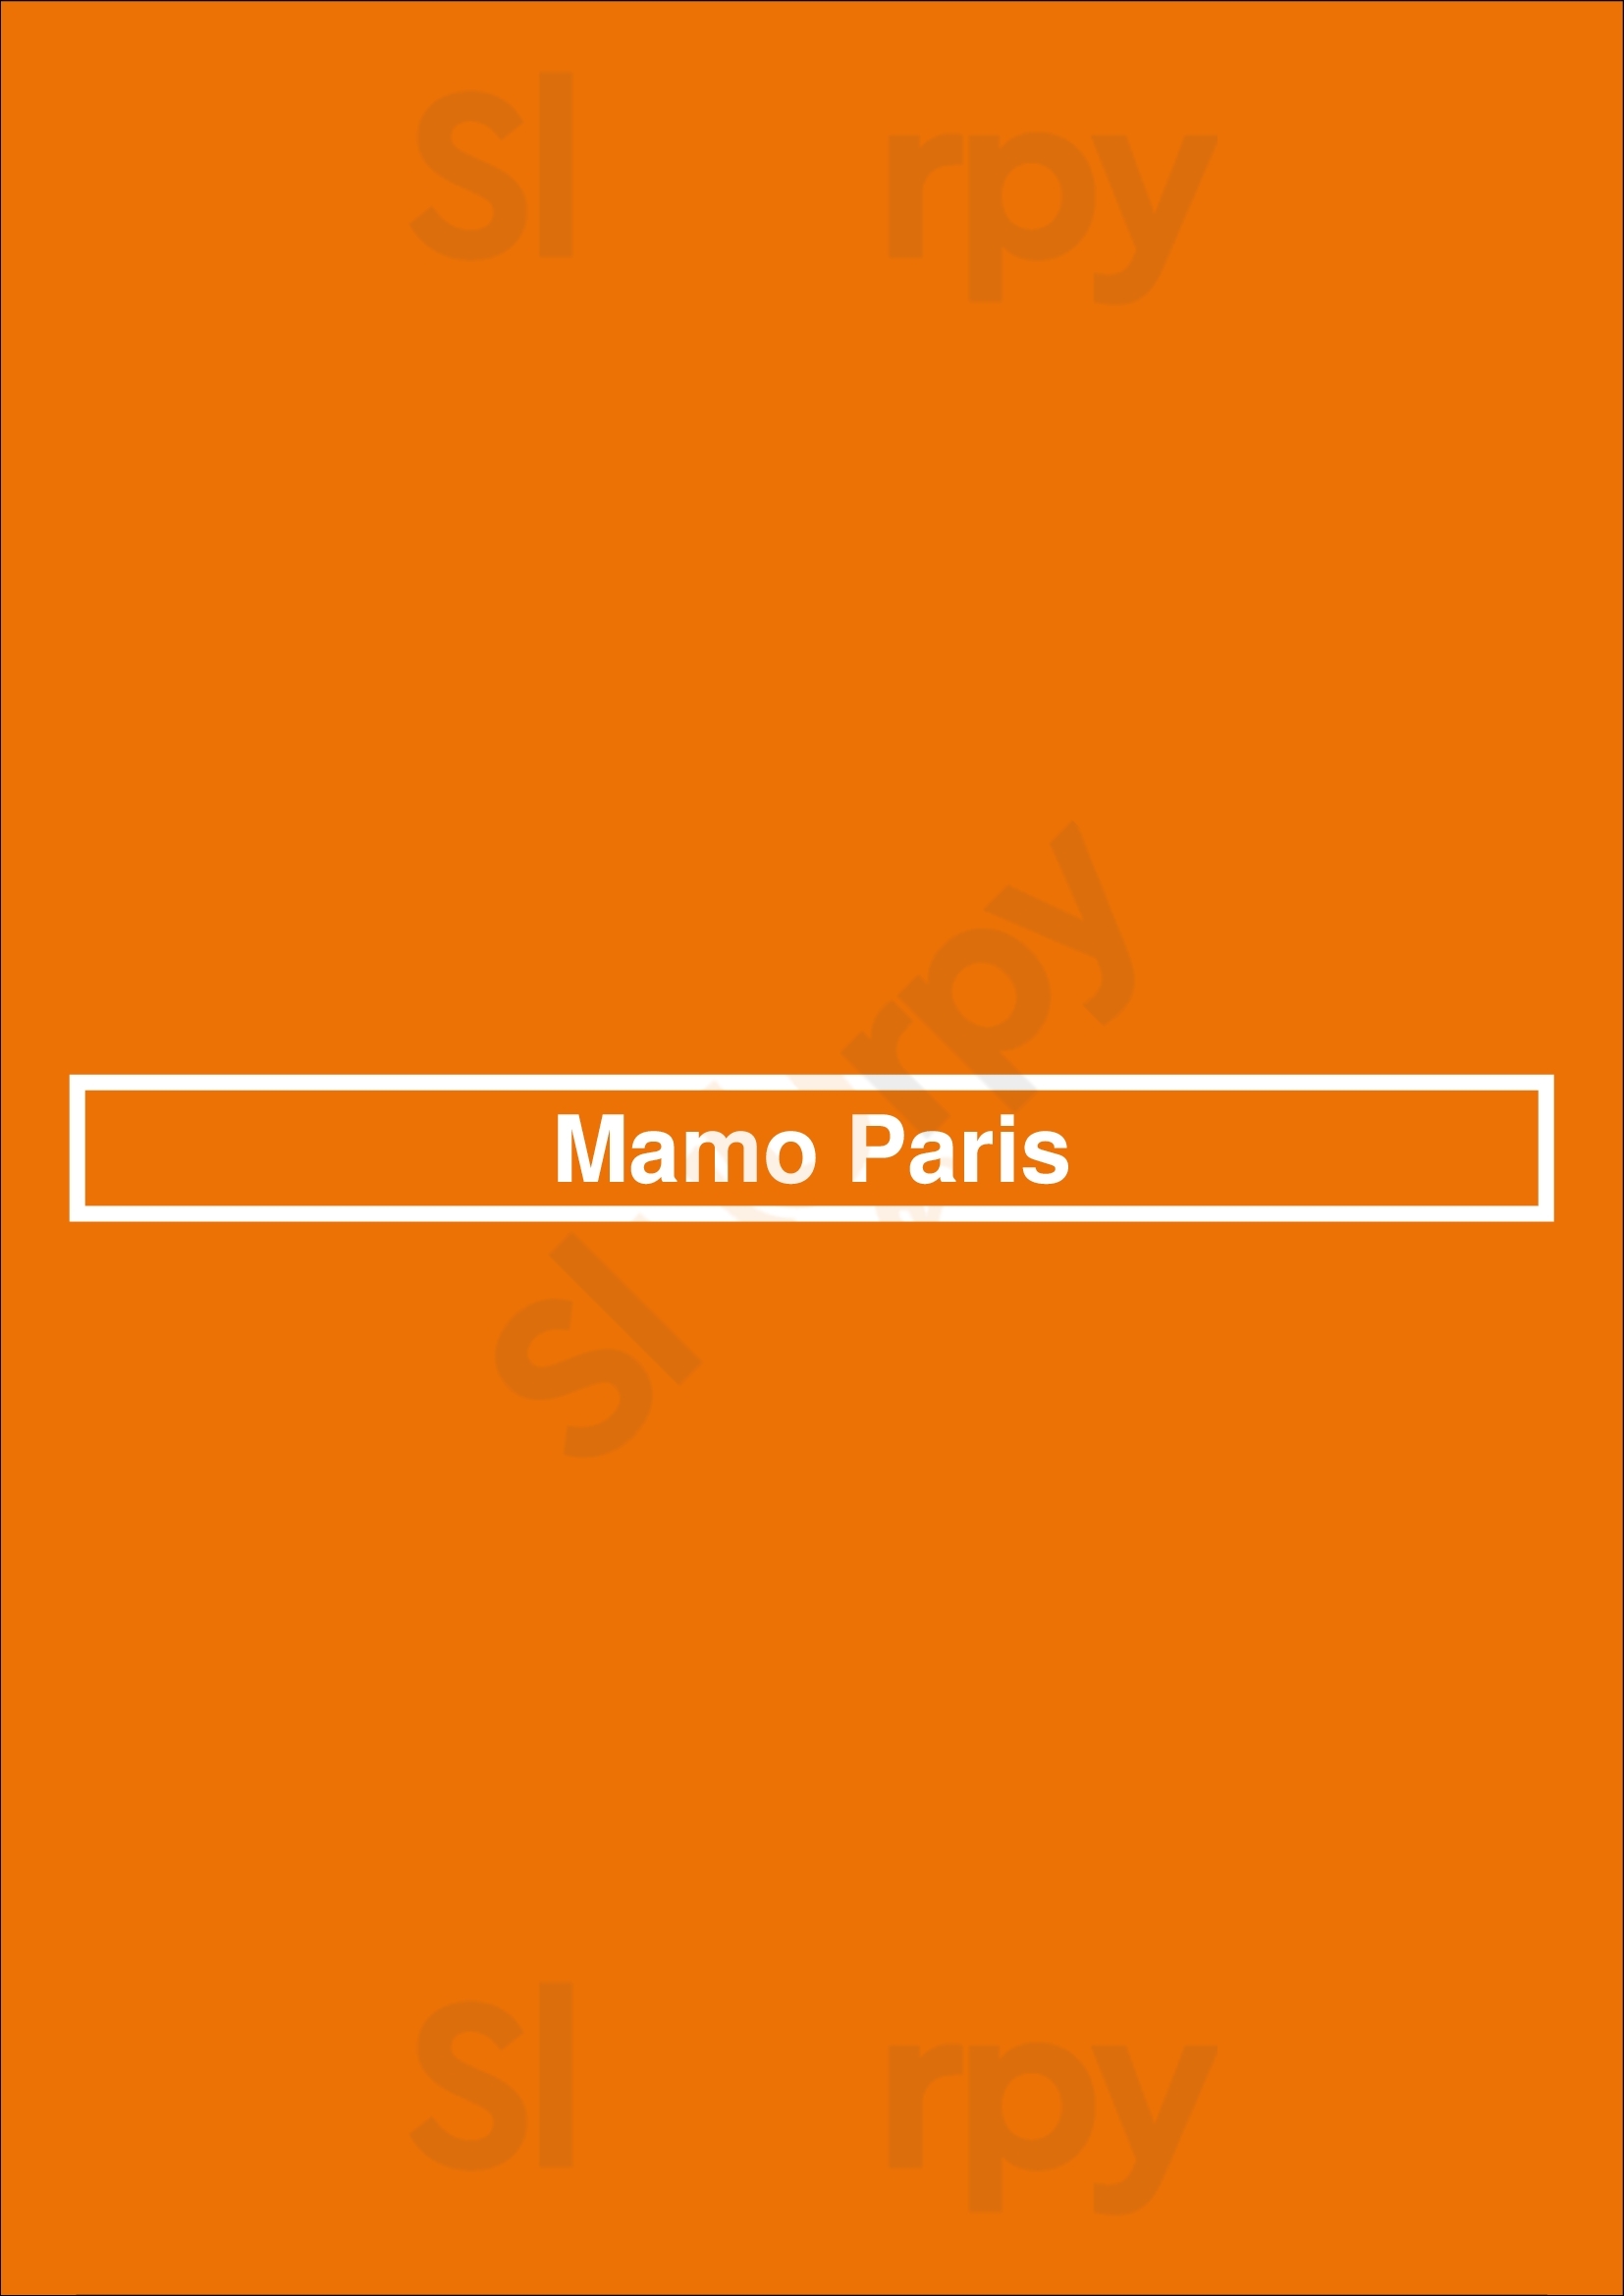 Mamo Paris Paris Menu - 1